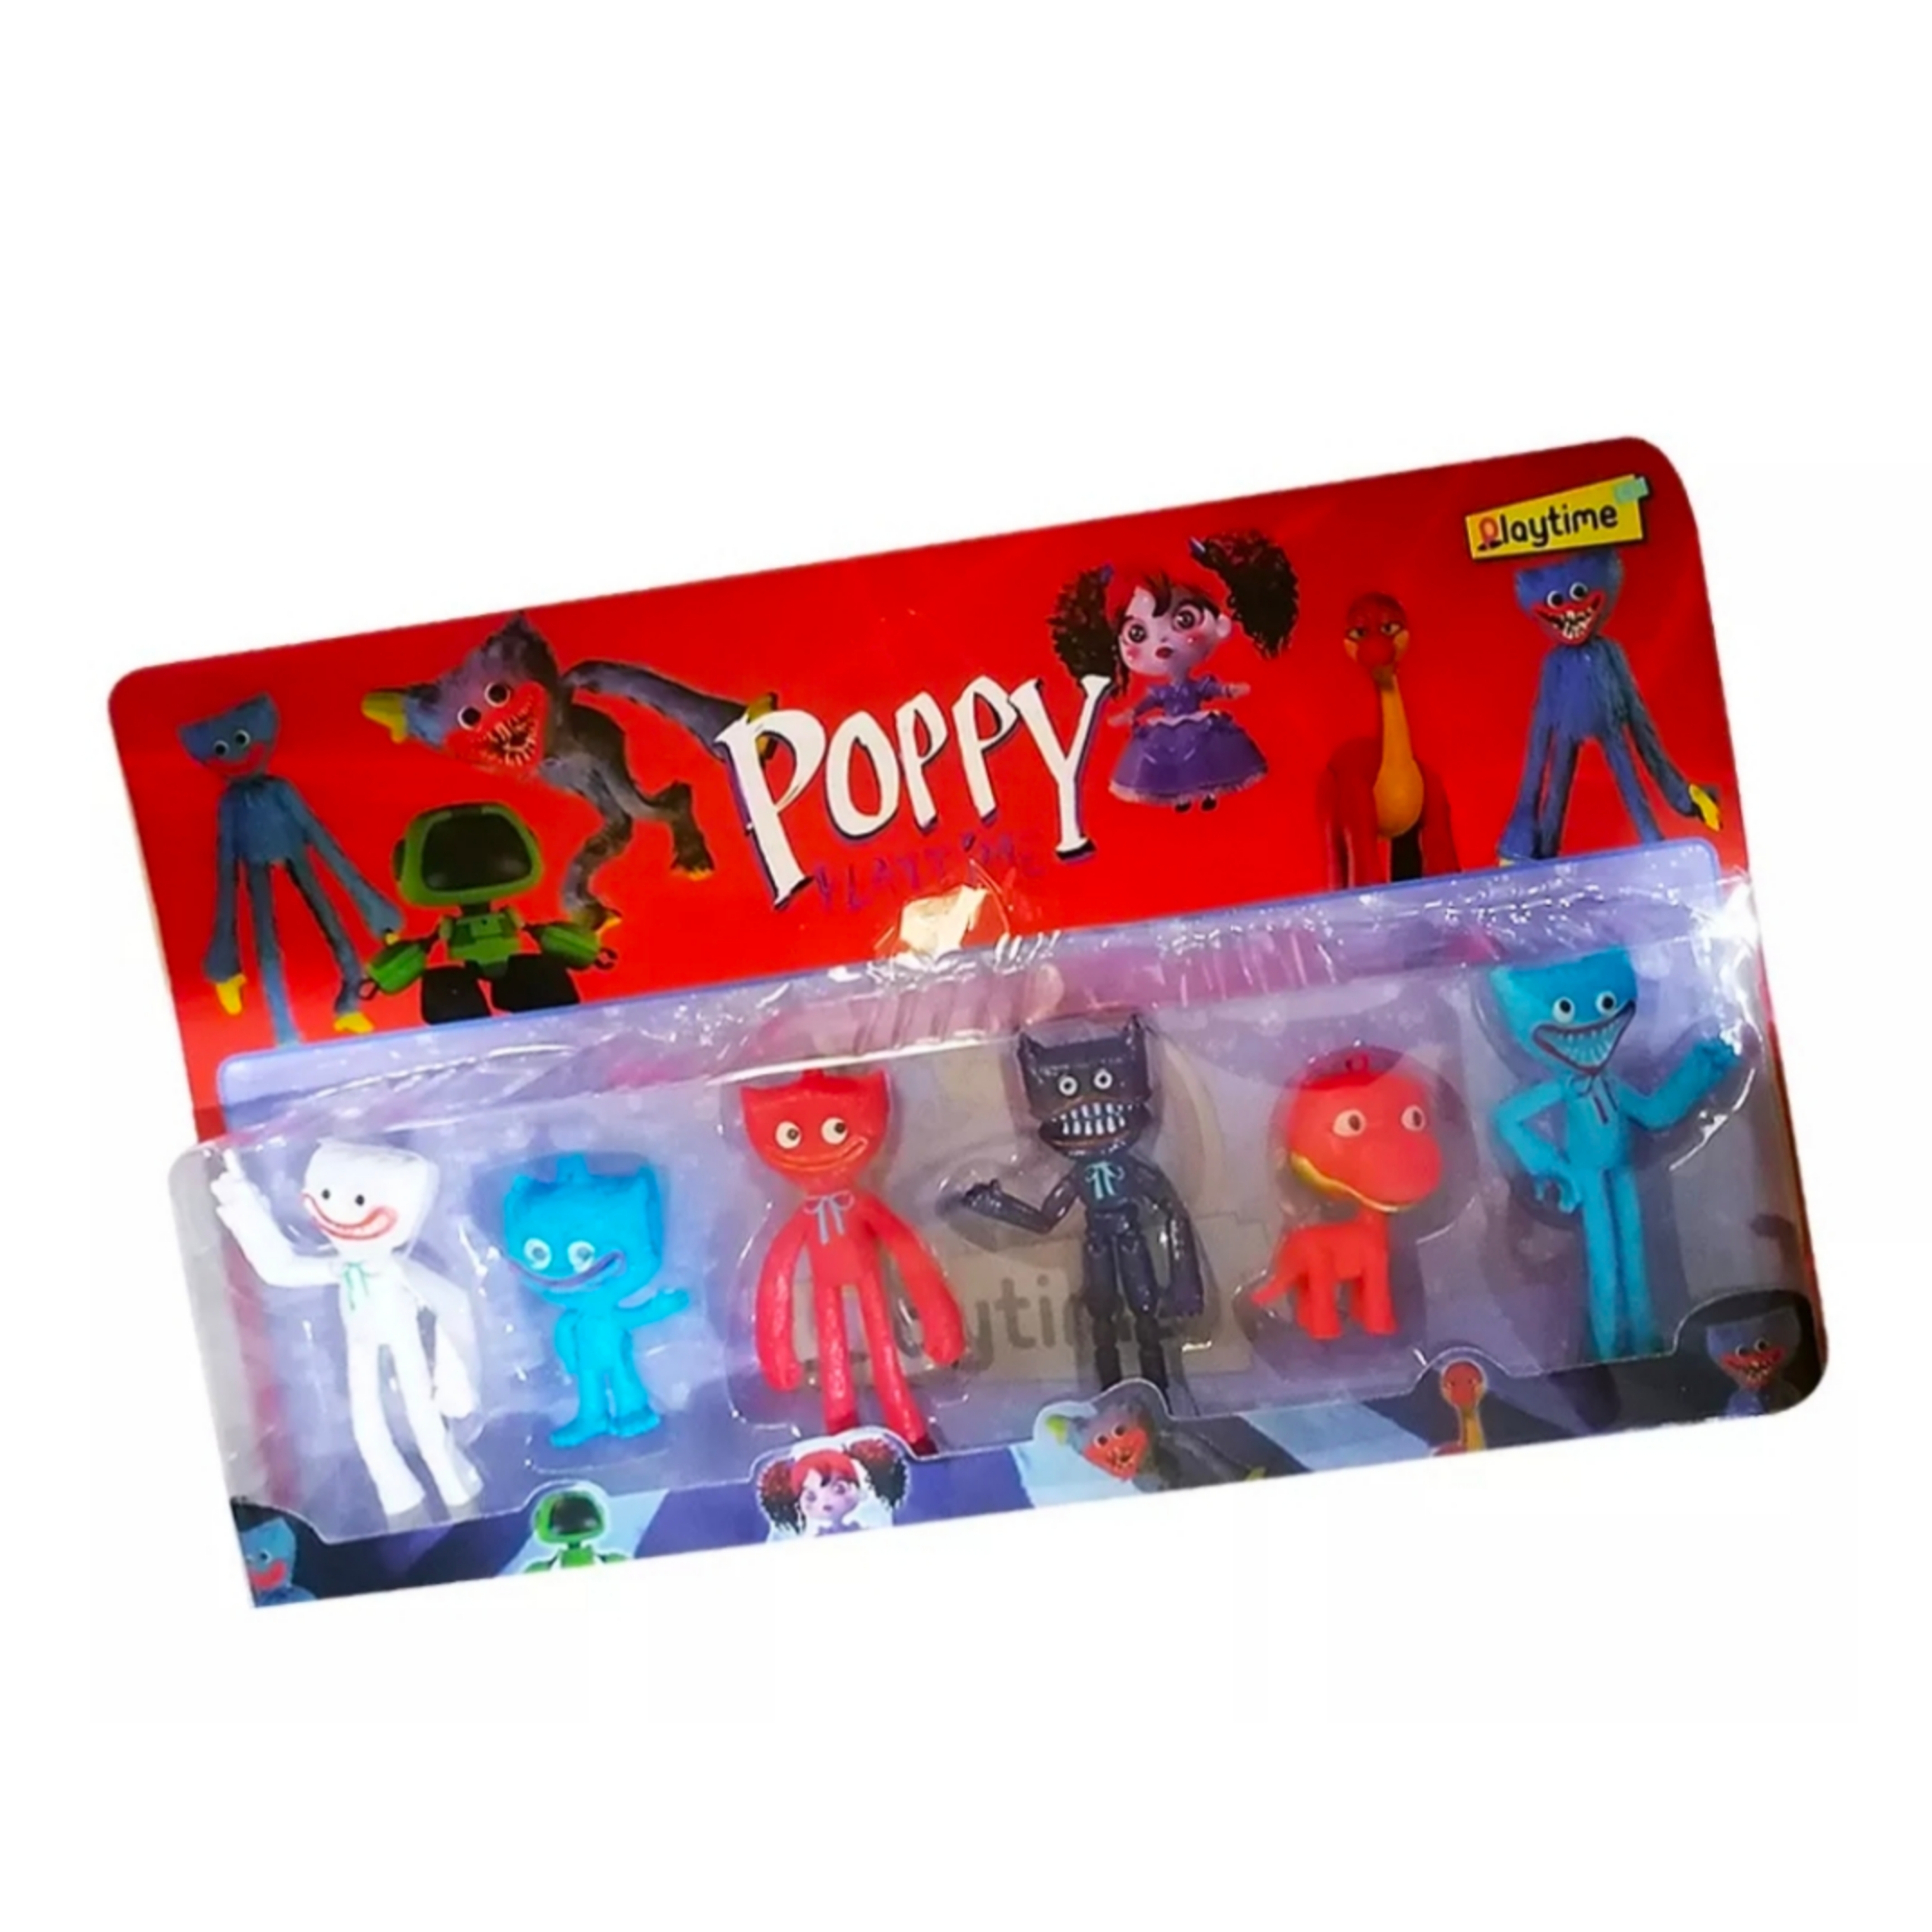 Poppy - OBF EN 227/197, Hobbies & Toys, Toys & Games on Carousell